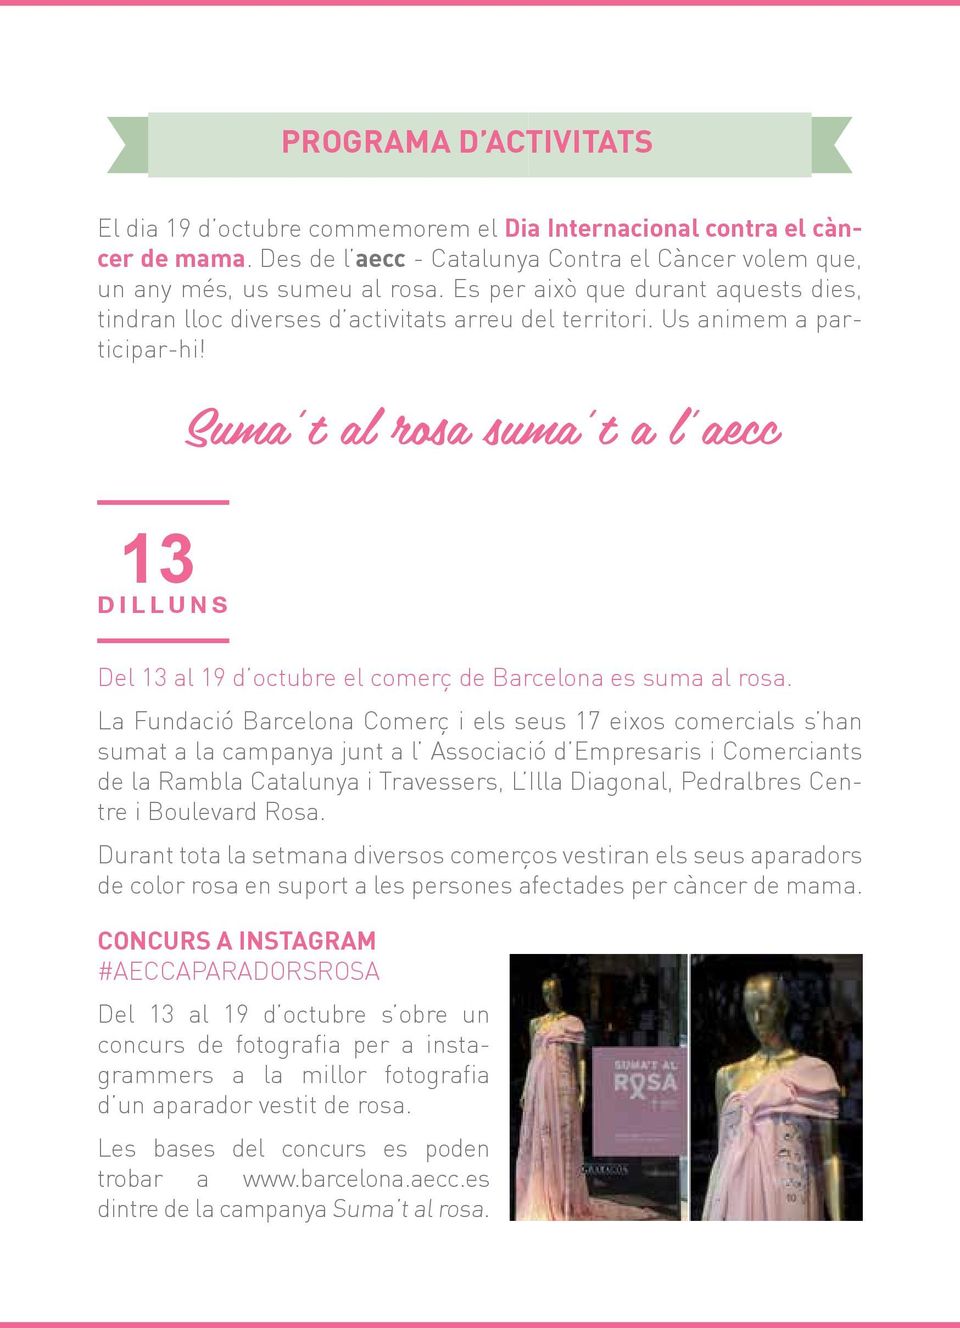 Suma t al rosa suma t a l aecc 13 DILLUNS Del 13 al 19 d octubre el comerç de Barcelona es suma al rosa.